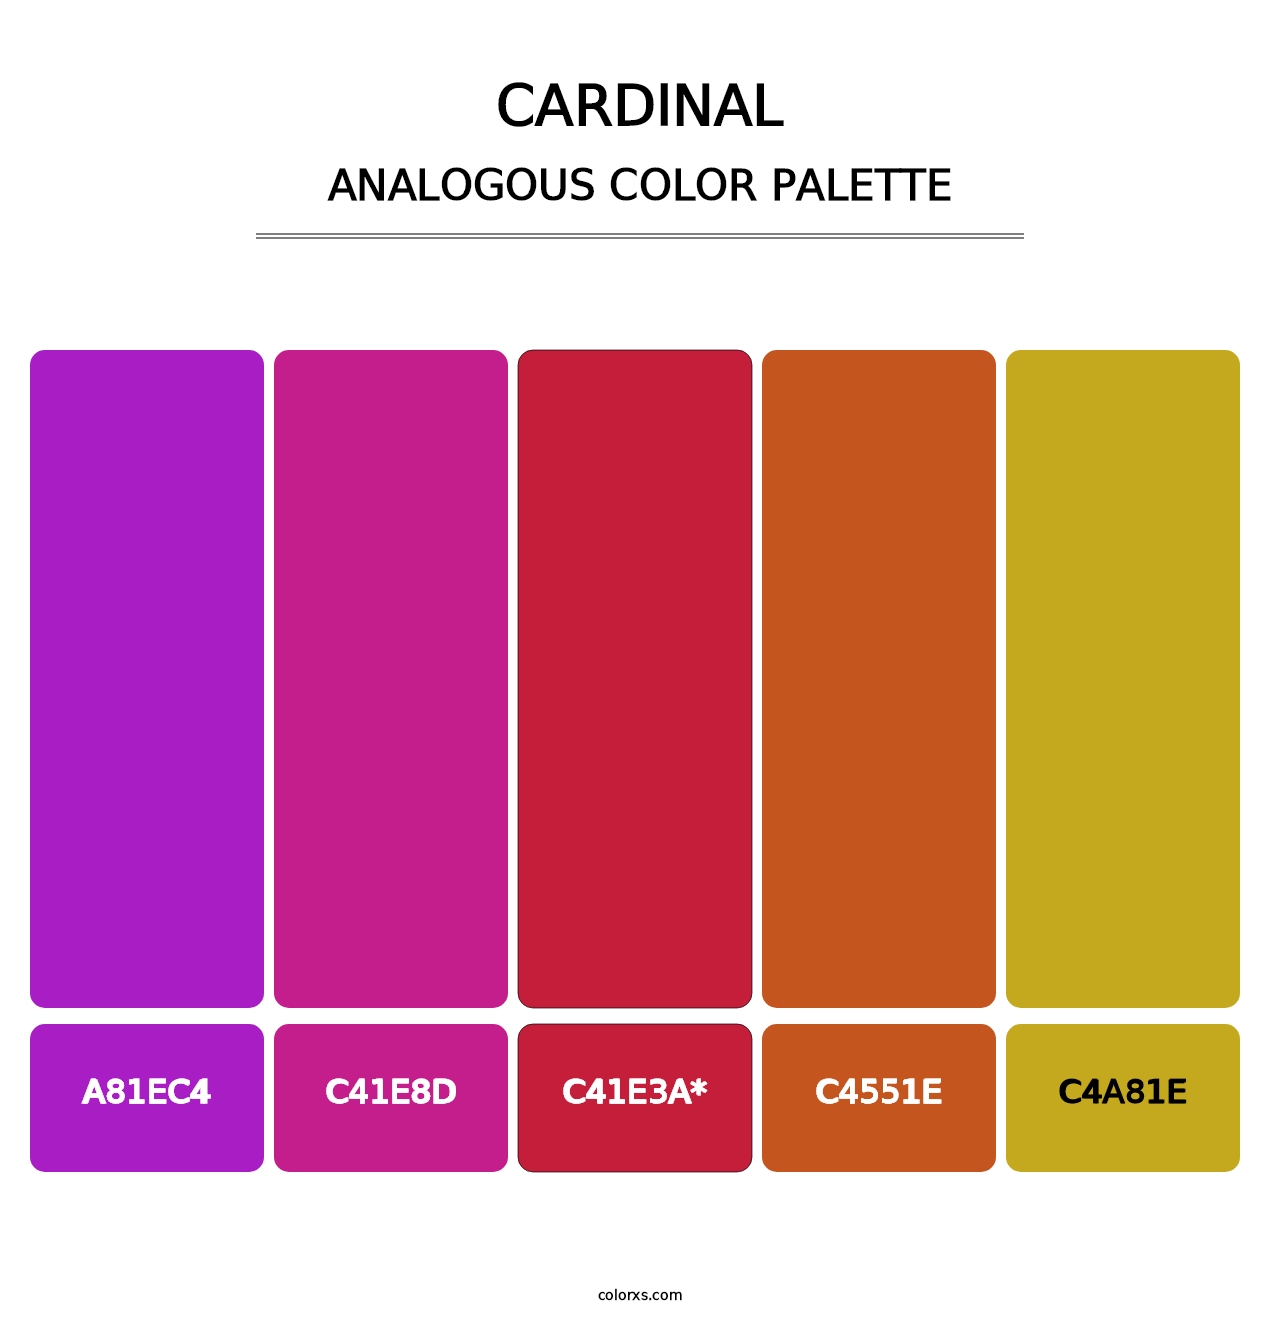 Cardinal - Analogous Color Palette